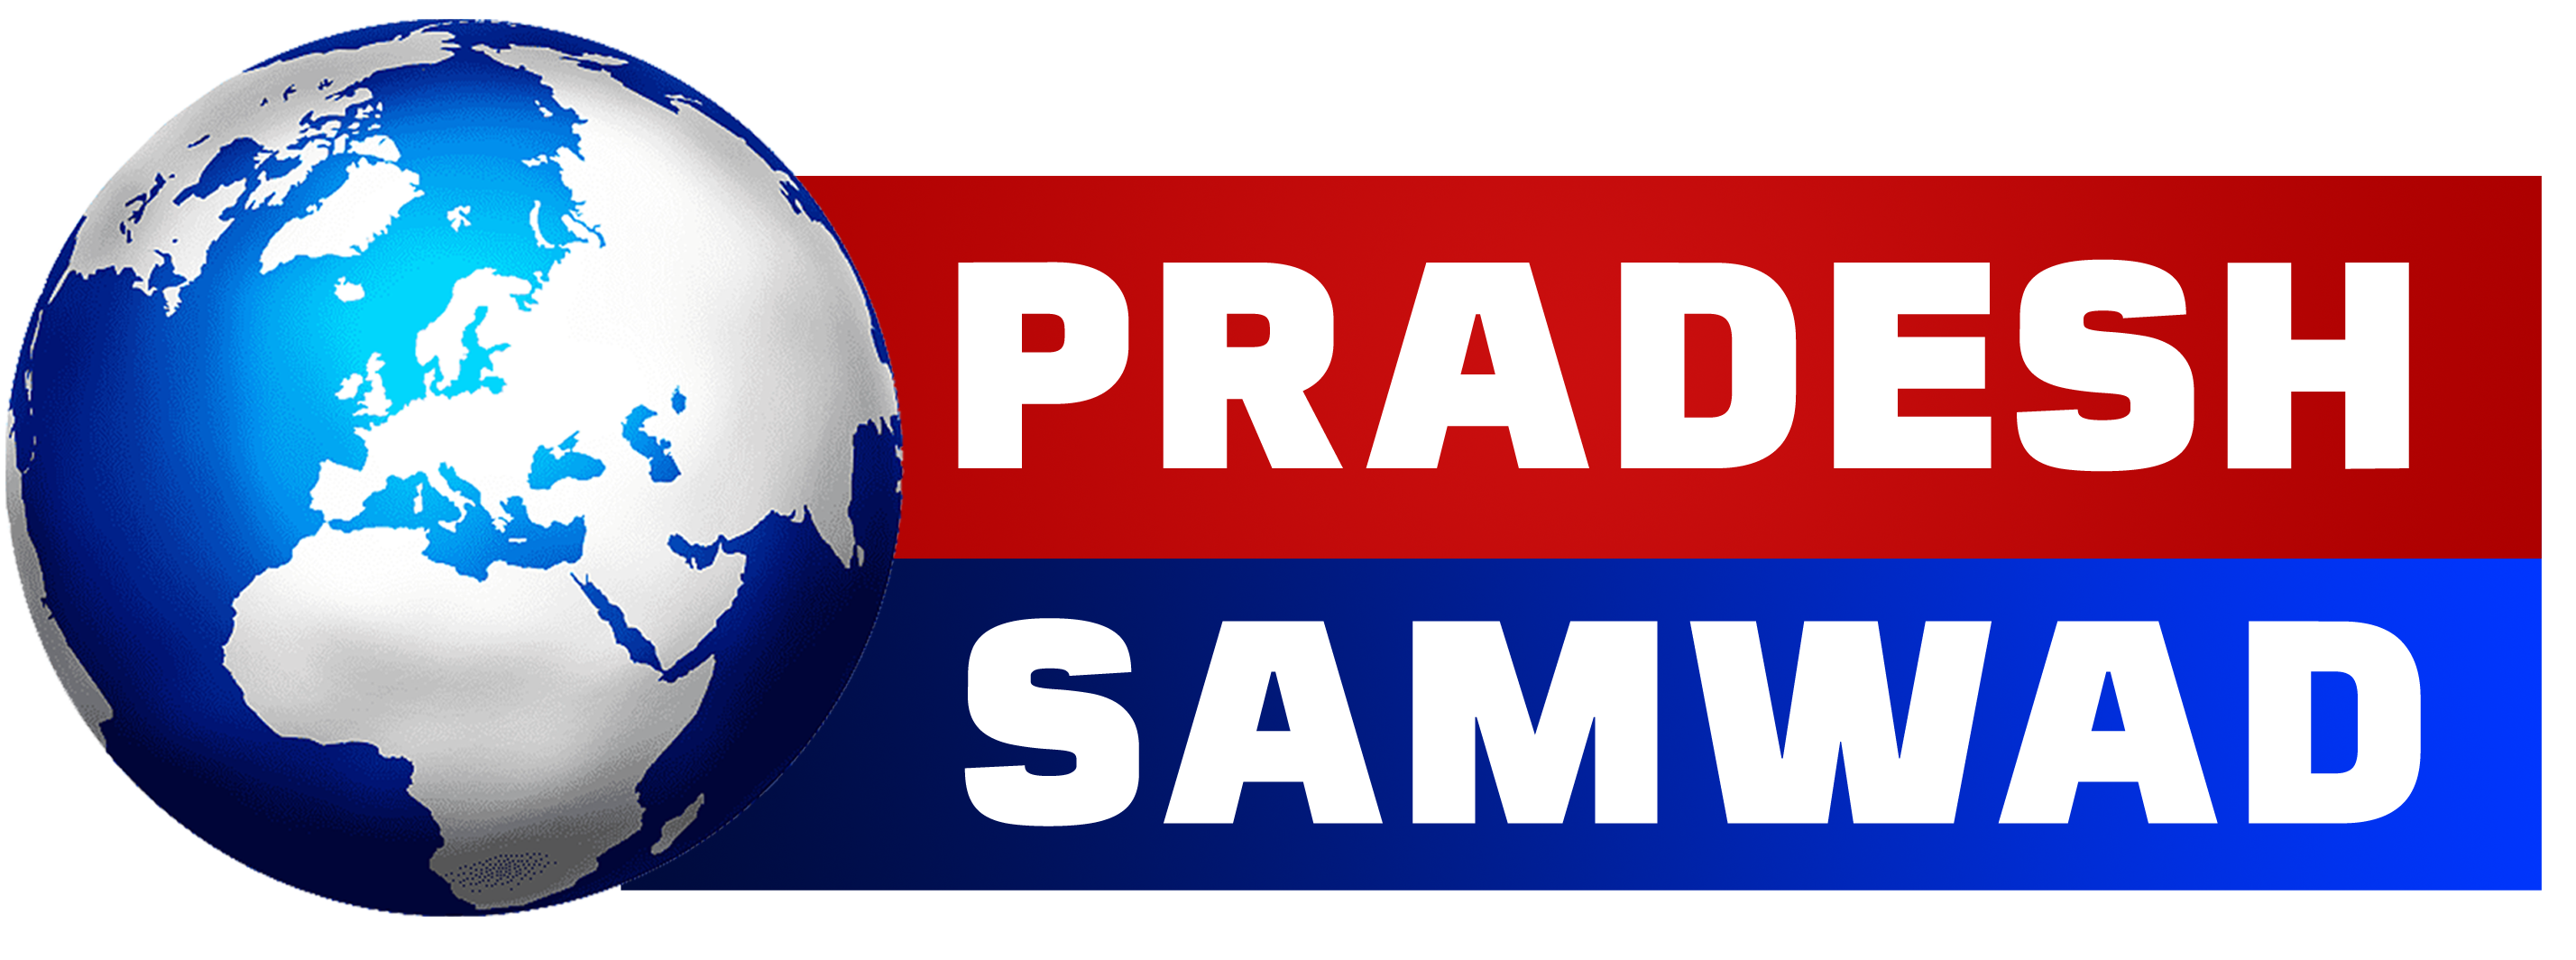 Pradesh Samwad